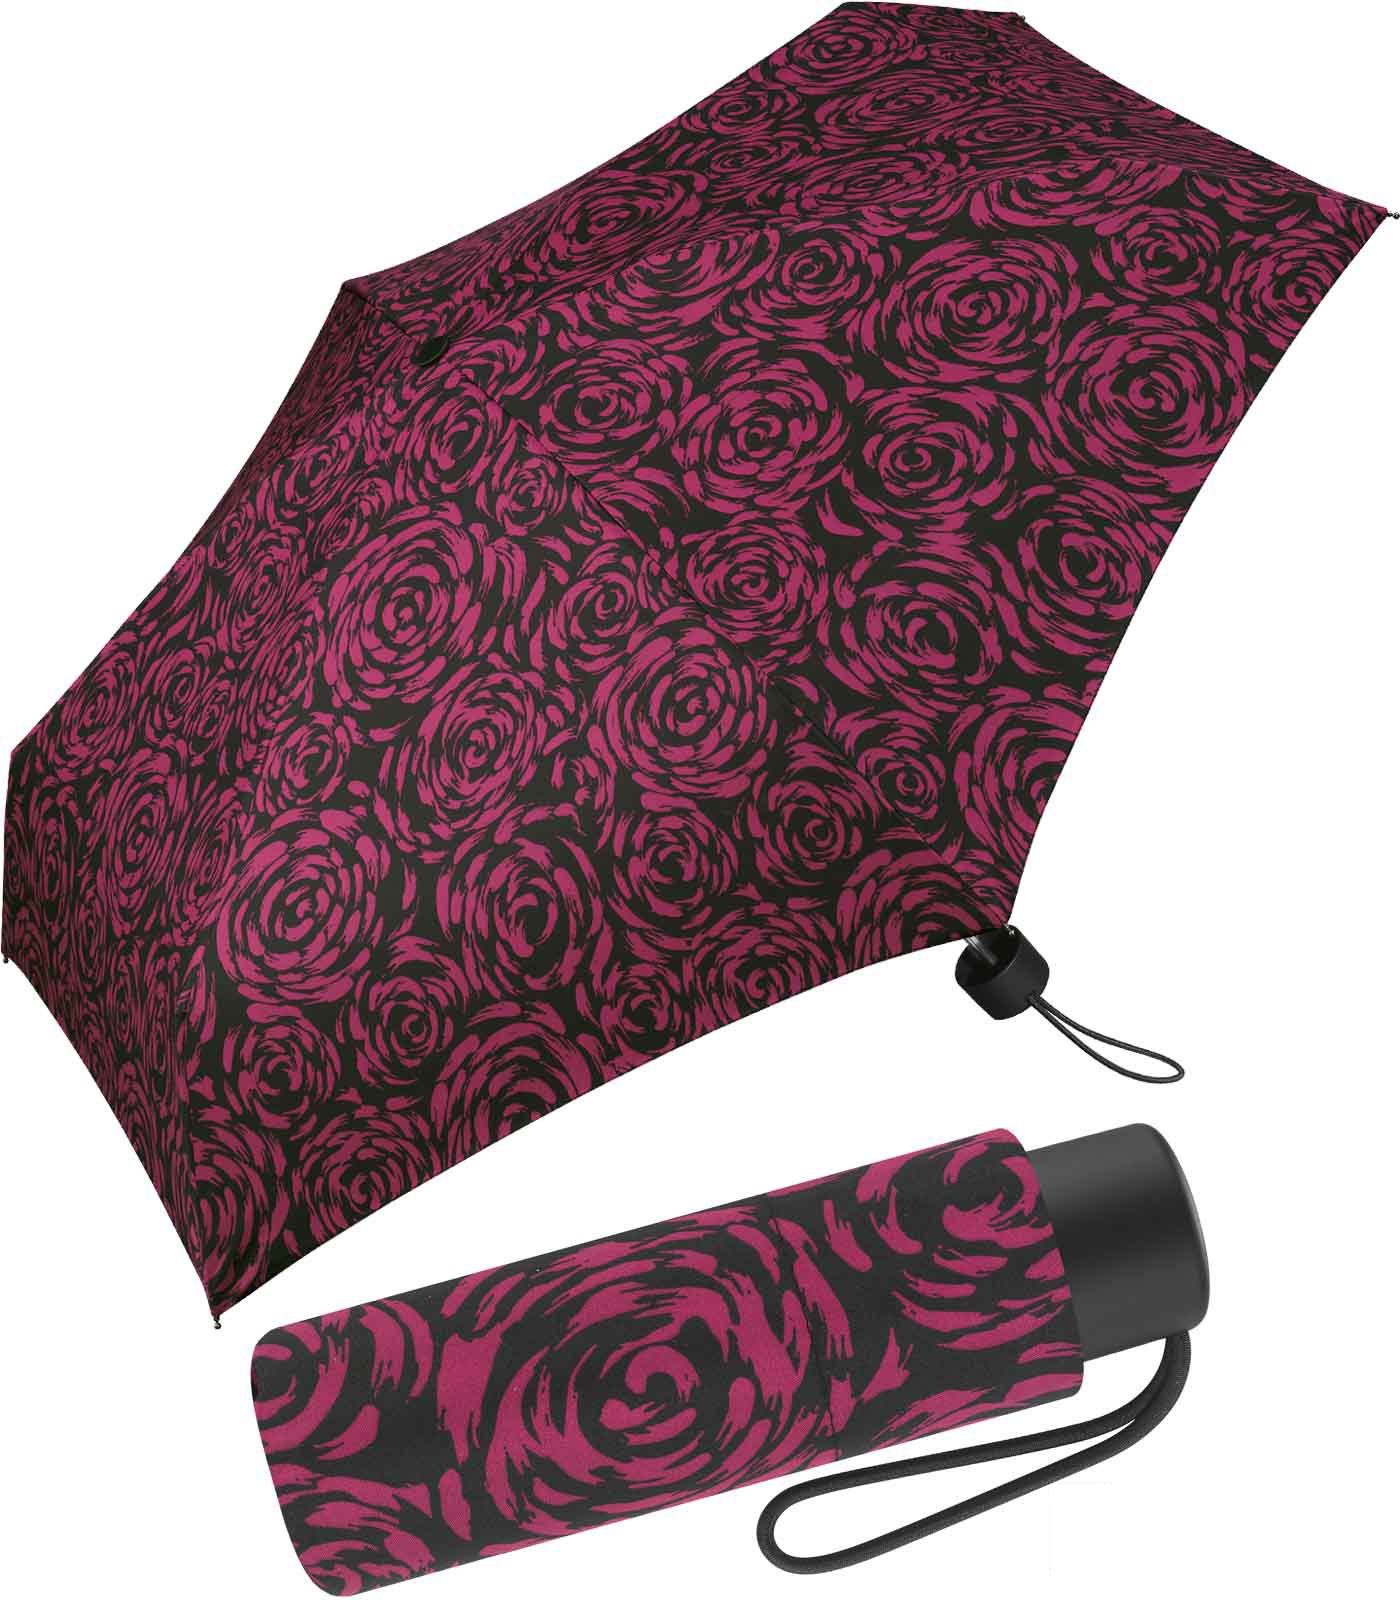 Pierre Cardin Taschenregenschirm mit mit Rosenblütenmalerei winziger wunderschöner Handöffner, bordeaux Damen-Taschenschirm